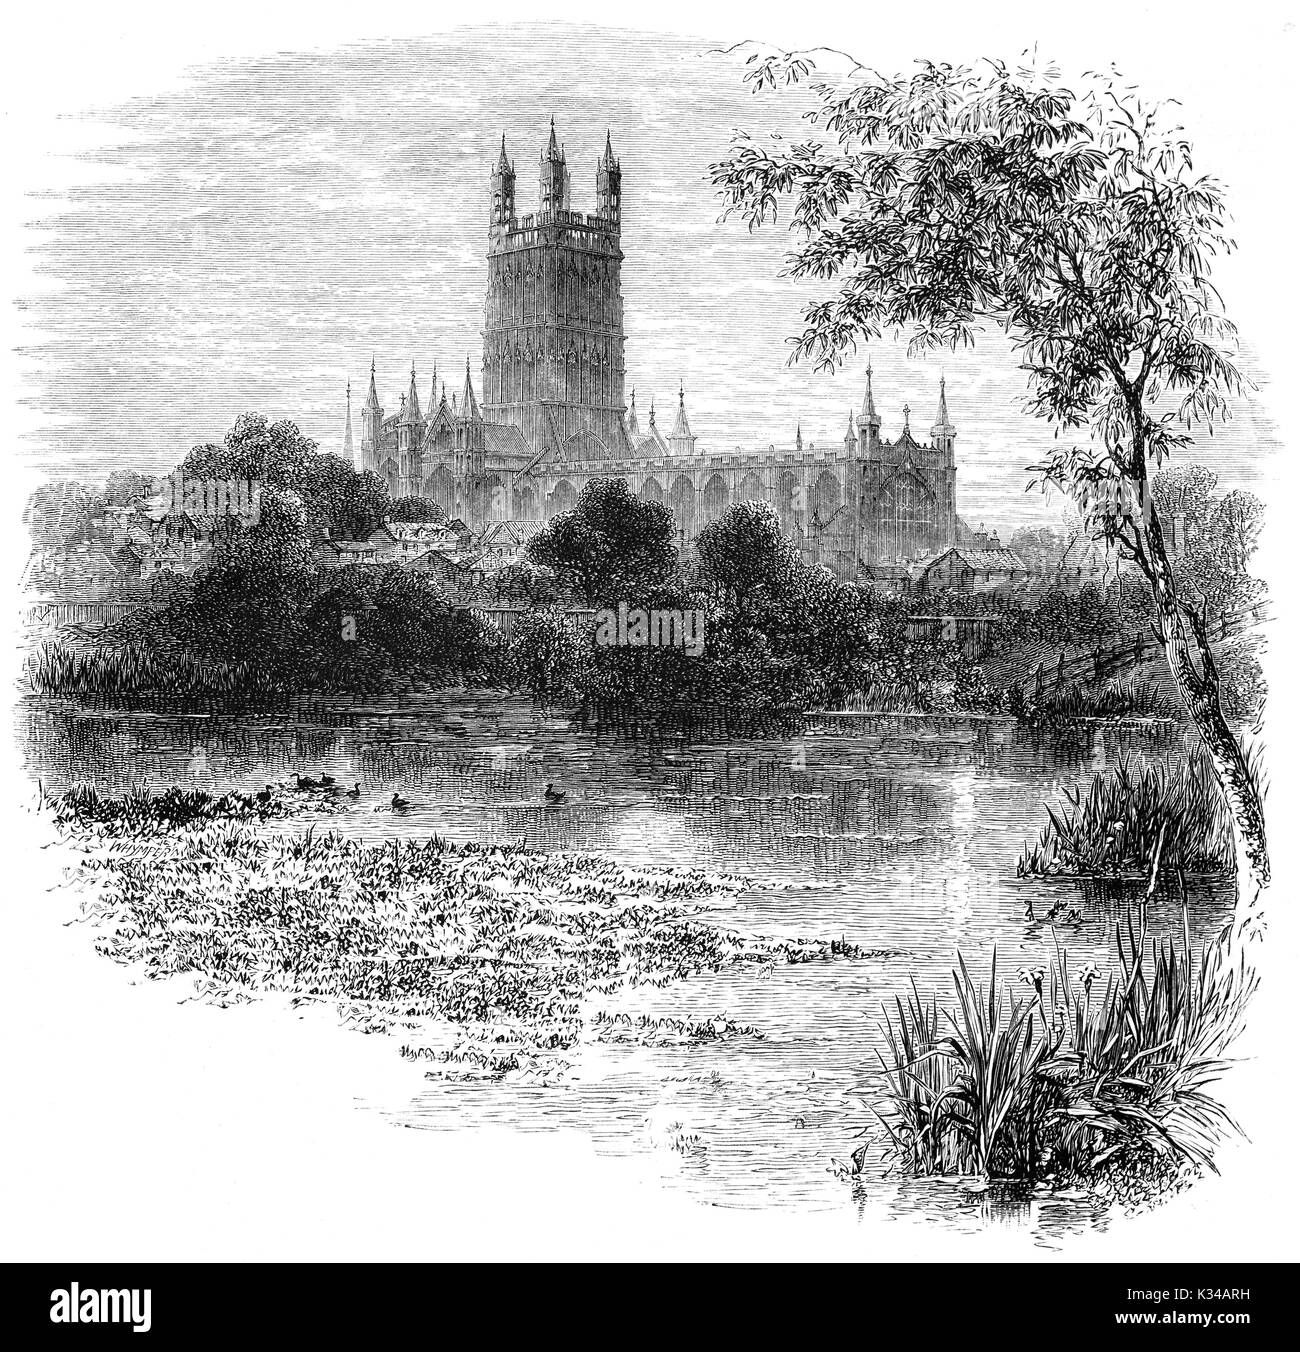 1870 : la cathédrale de Gloucester, officiellement l'église cathédrale de Saint Pierre et de la Sainte et indivisible Trinité vu de l'autre côté de la rivière Severn. Il a son origine au 678 ou 679 et a été dissous par le Roi Henry VIII. Gloucester, en Angleterre. Banque D'Images